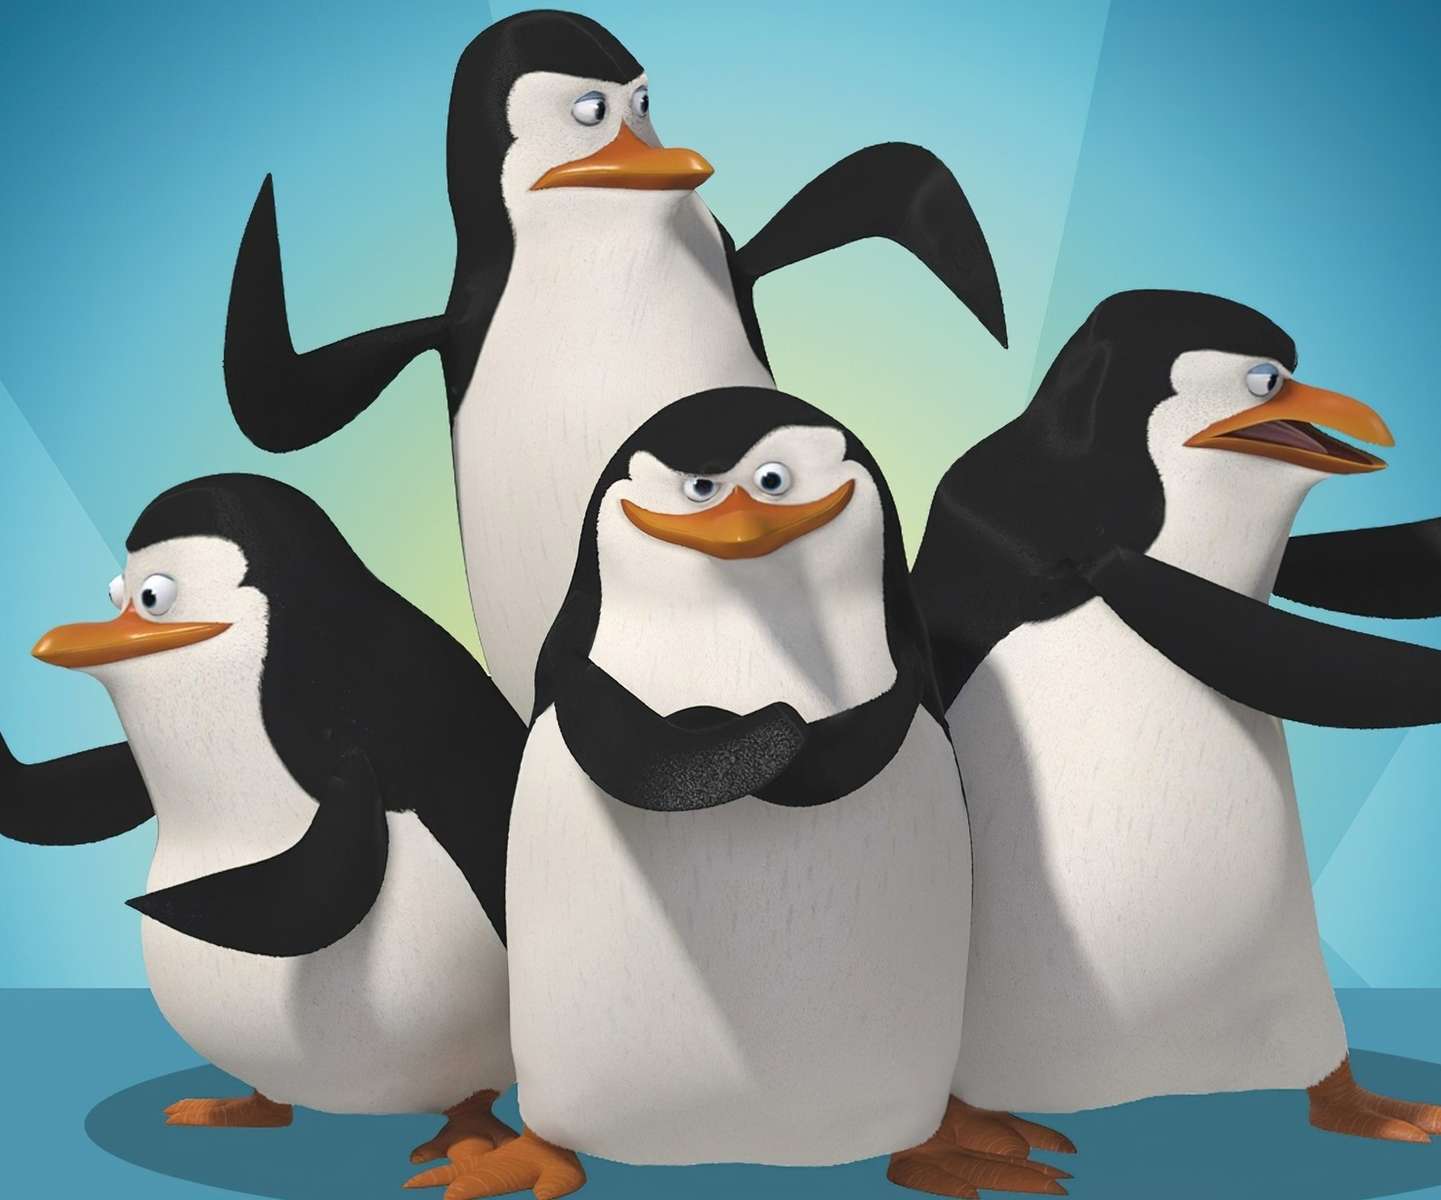 Пингвини от Мадагаскар онлайн пъзел